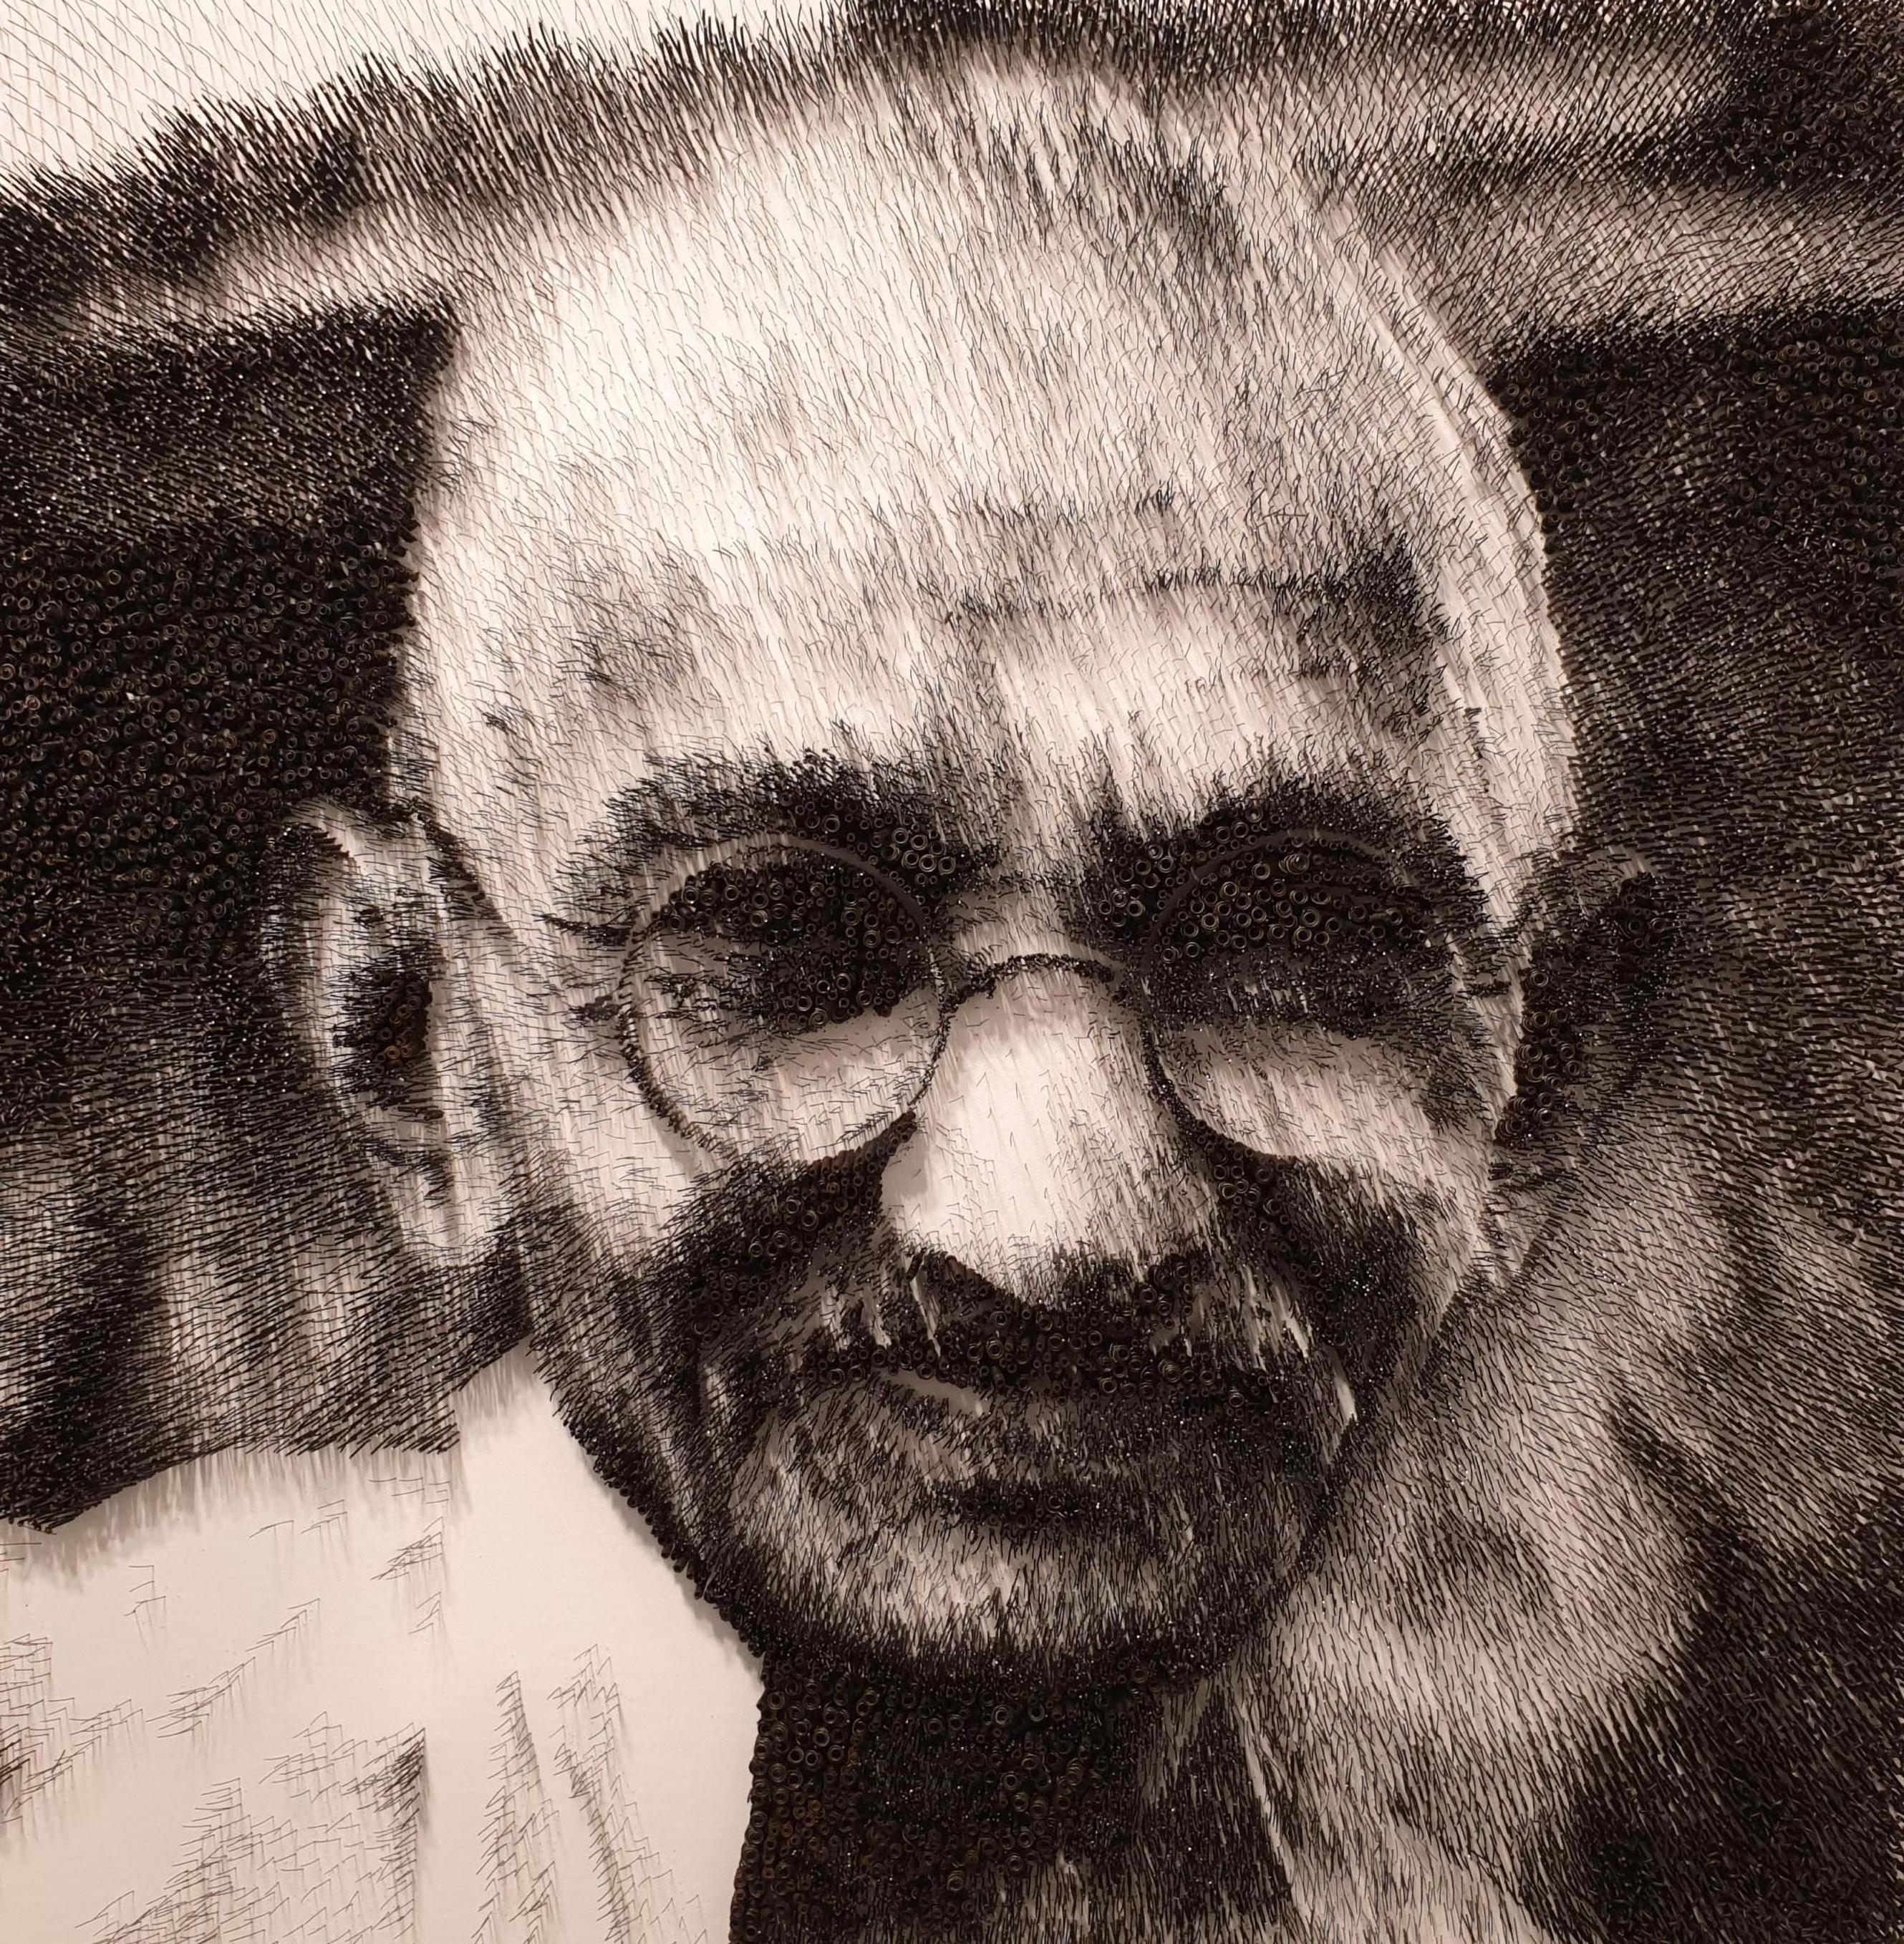 Mohandas Gandhi[Schwarz-Weiß, Stahl auf Leinwand, Stereoskop, Porträt, neue Medien]